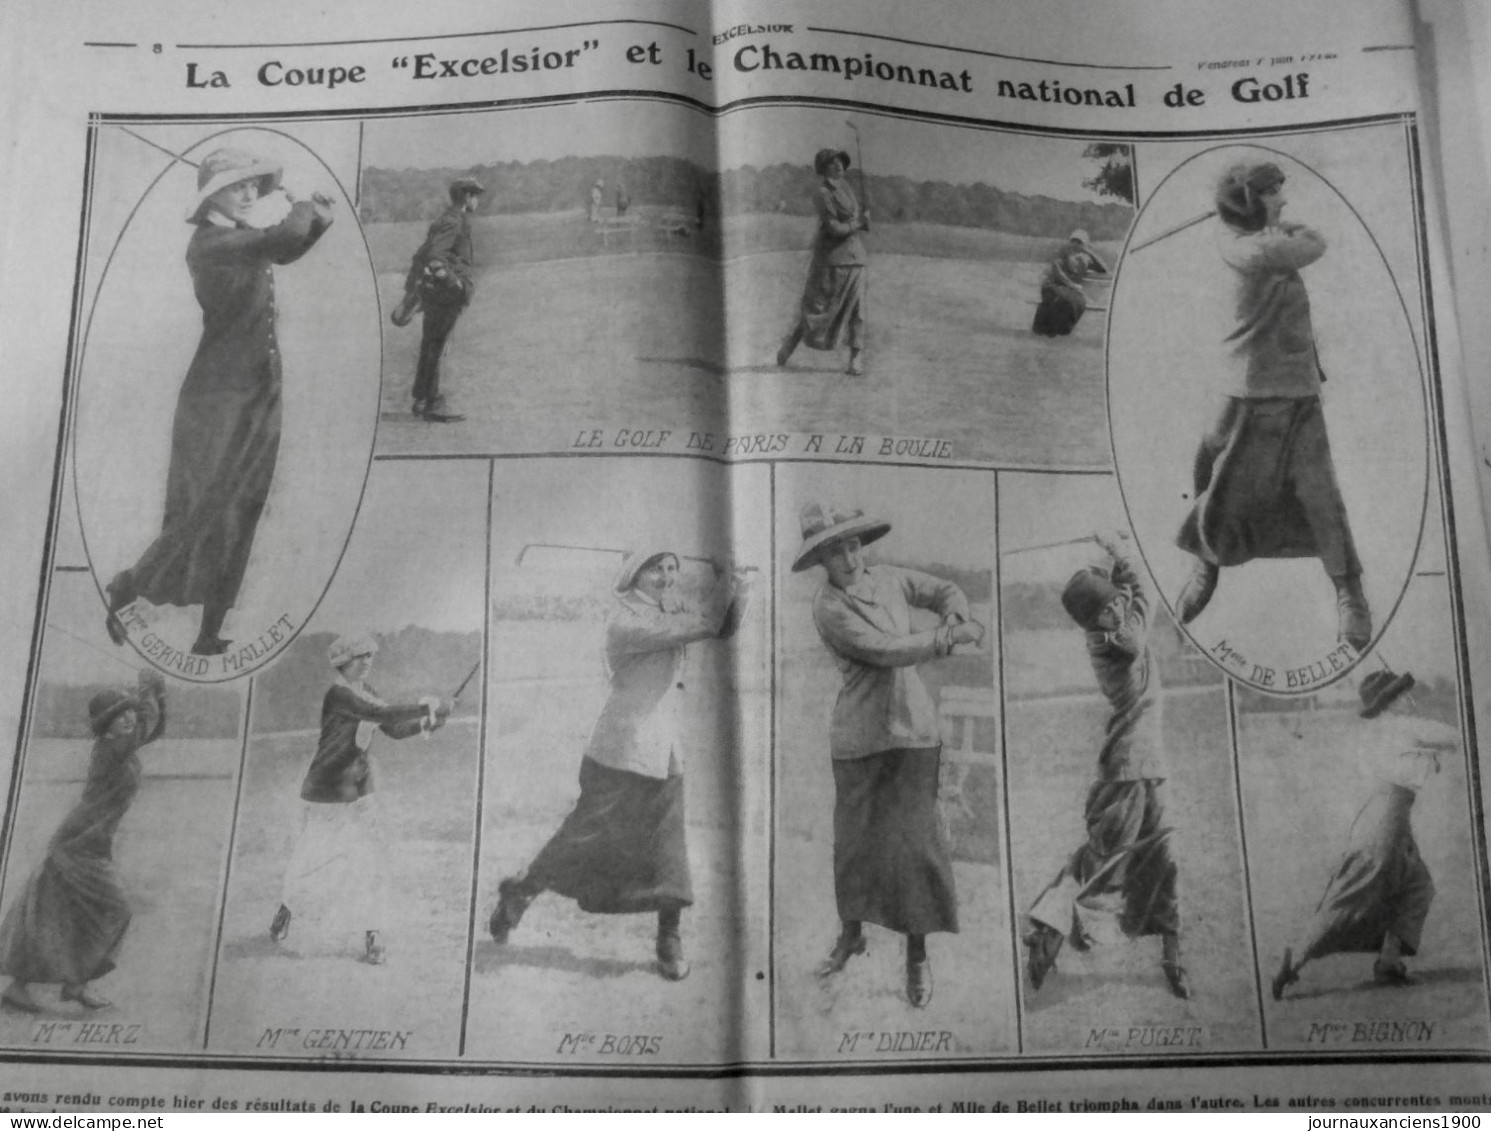 1912 EXCELSIOR ARTICLE DE PRESSE PARIS GOLF FEMININ MLES MALLET BELLET 1 JOURNAL ANCIEN - Diapositivas De Vidrio